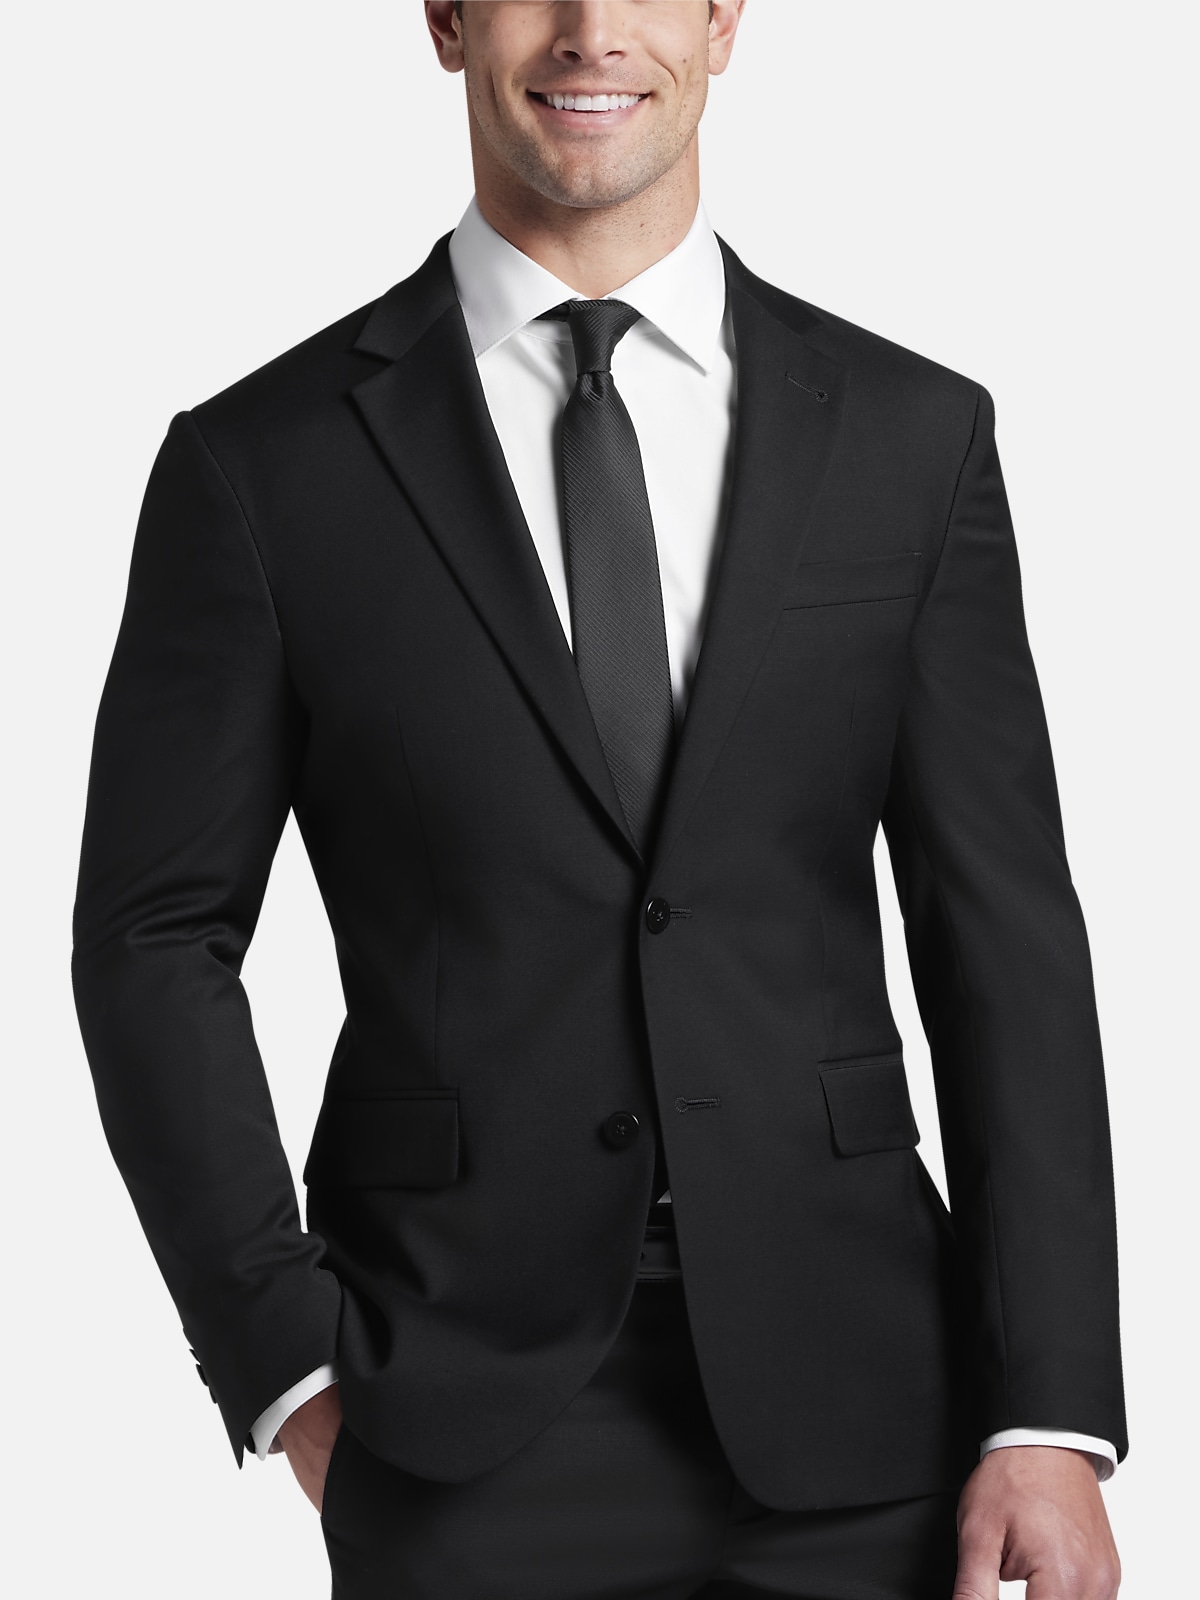 JOE Joseph Abboud Slim Fit Suit Separates Jacket | All Clothing| Men's ...